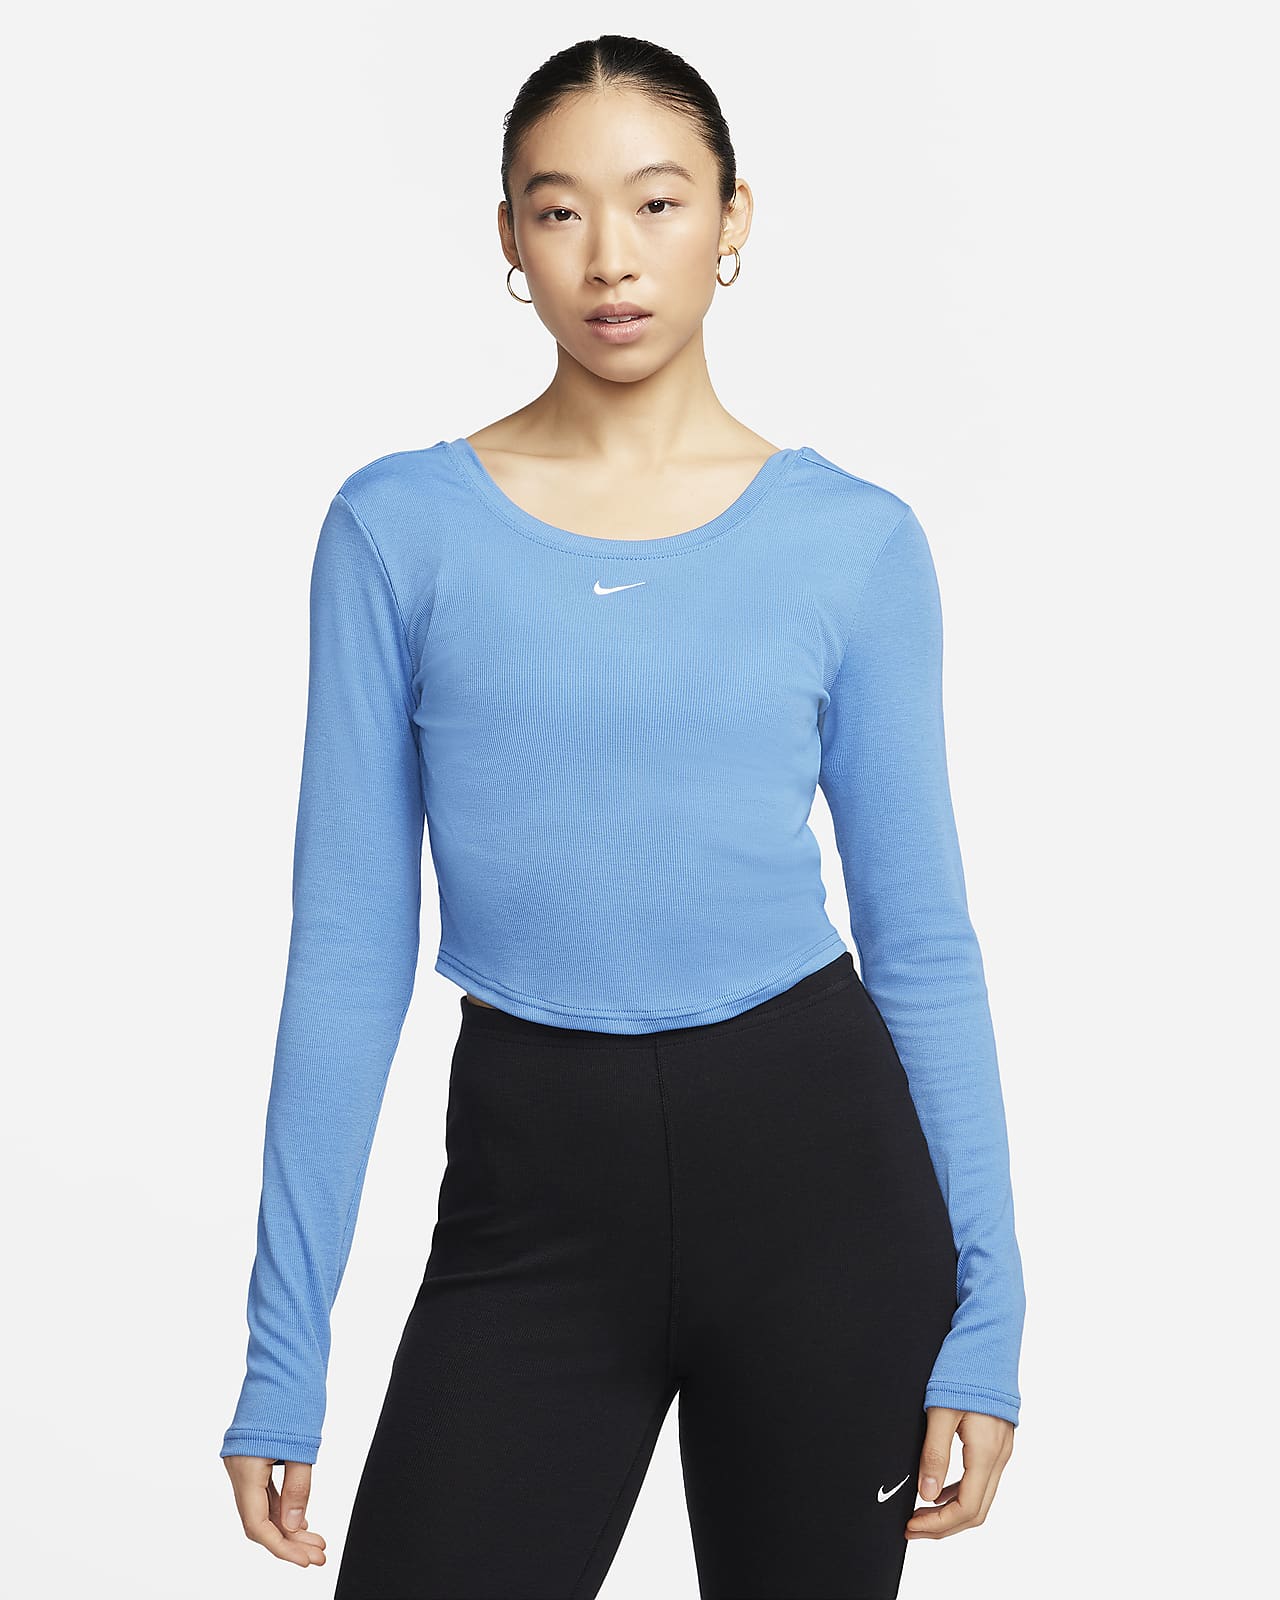 Nike Sportswear Chill Knit szűkített szabású, hátul mélyen kivágott, hosszú ujjú, finoman bordázott női felső